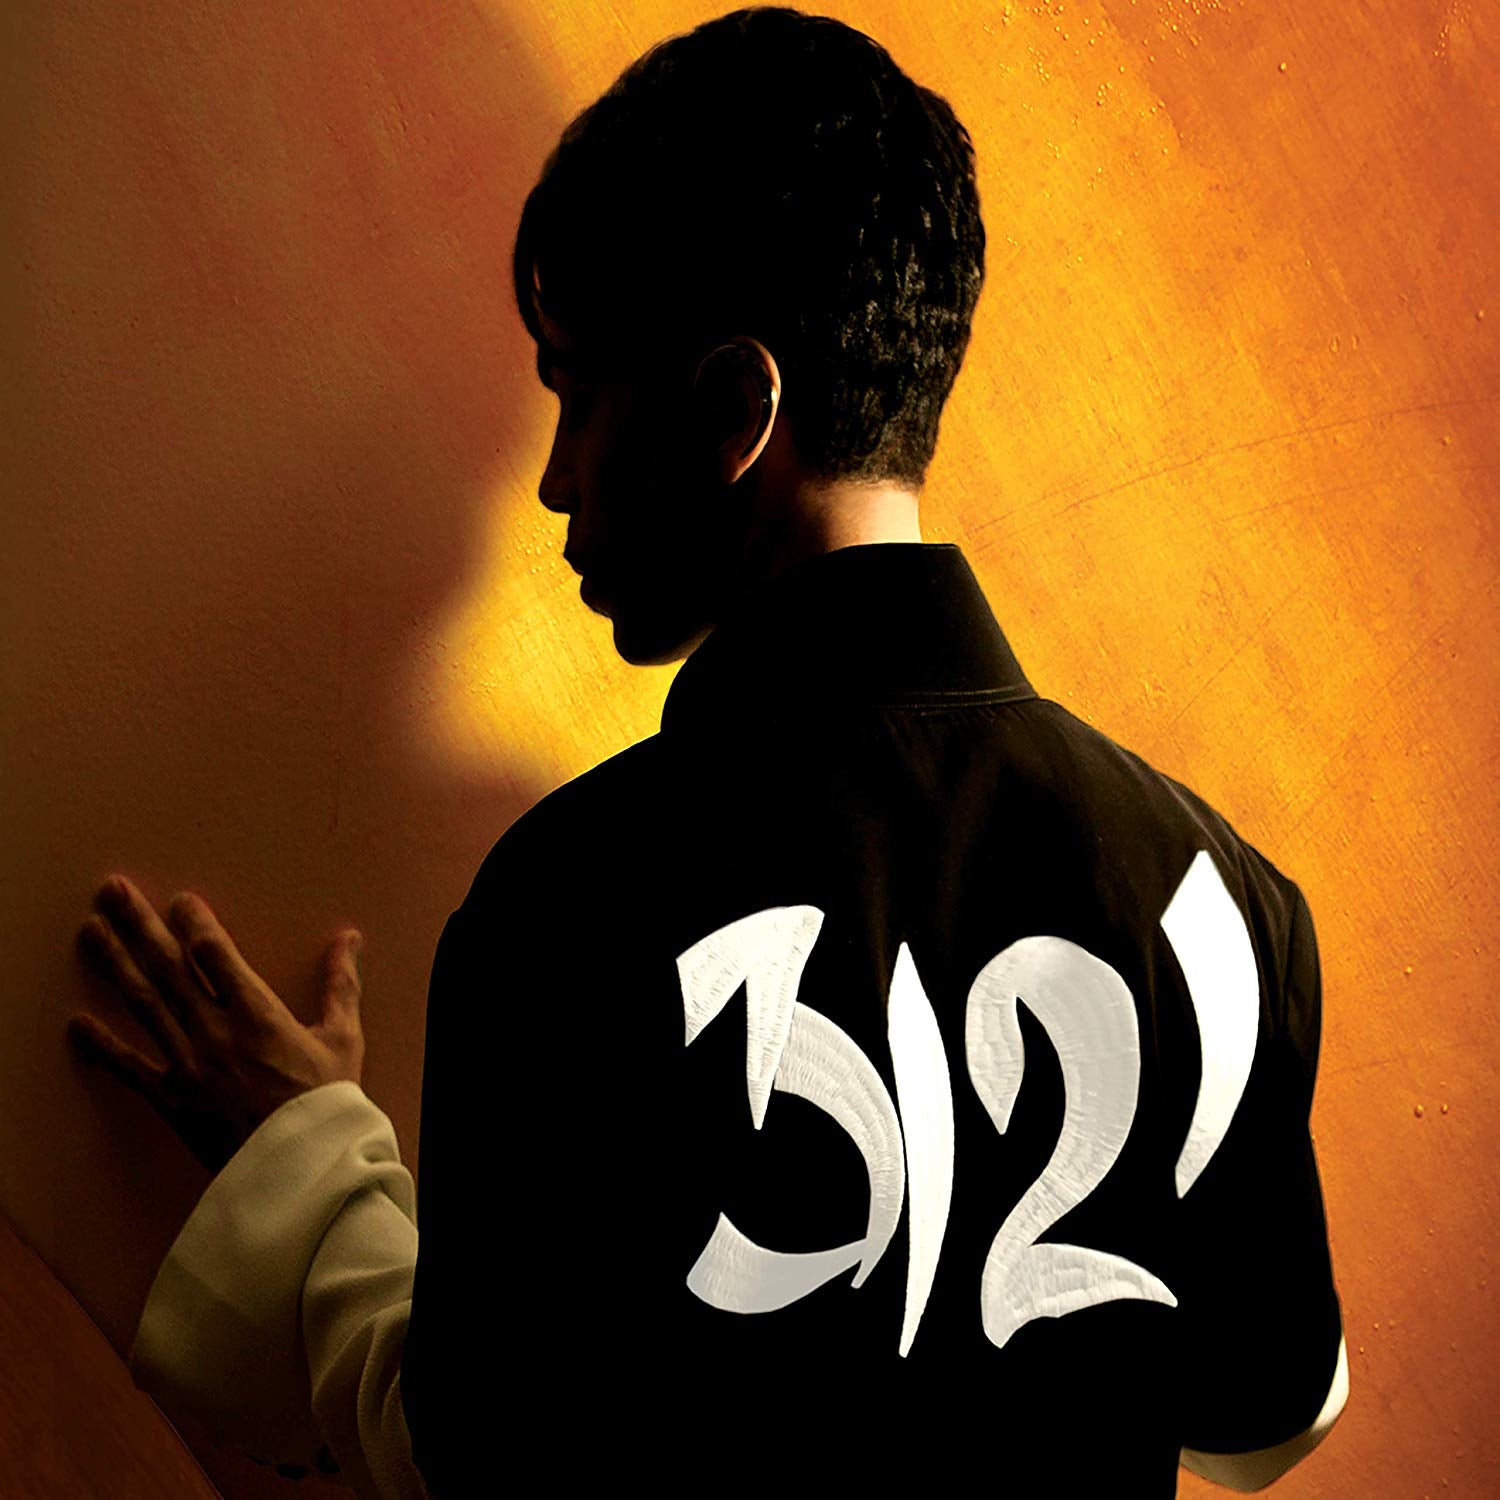 Prince 3121 CD